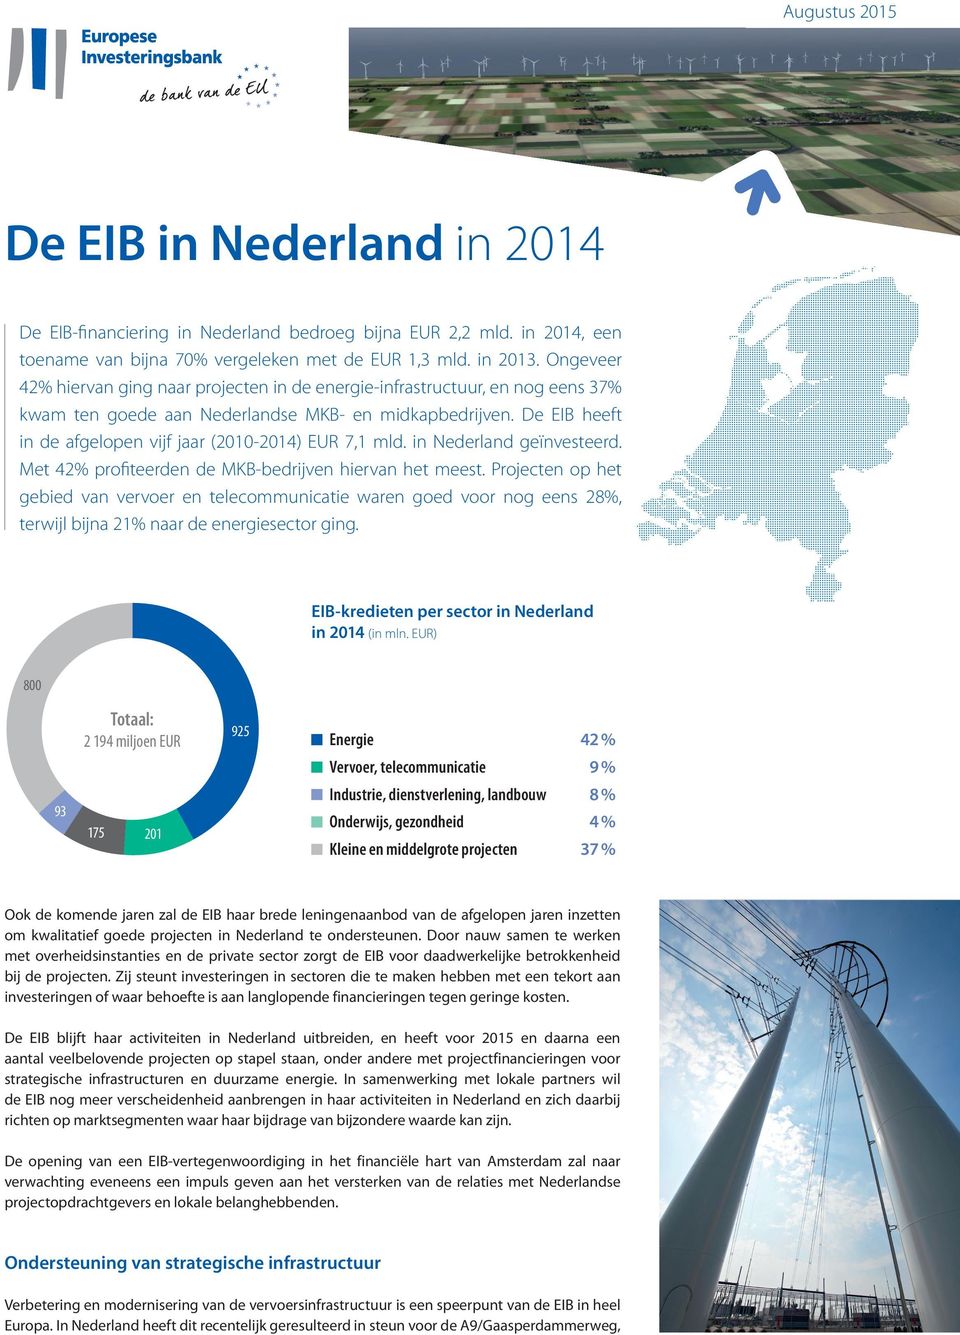 De EIB heeft in de afgelopen vijf jaar (2010-2014) EUR 7,1 mld. in Nederland geïnvesteerd. Met 42% profiteerden de MKB-bedrijven hiervan het meest.